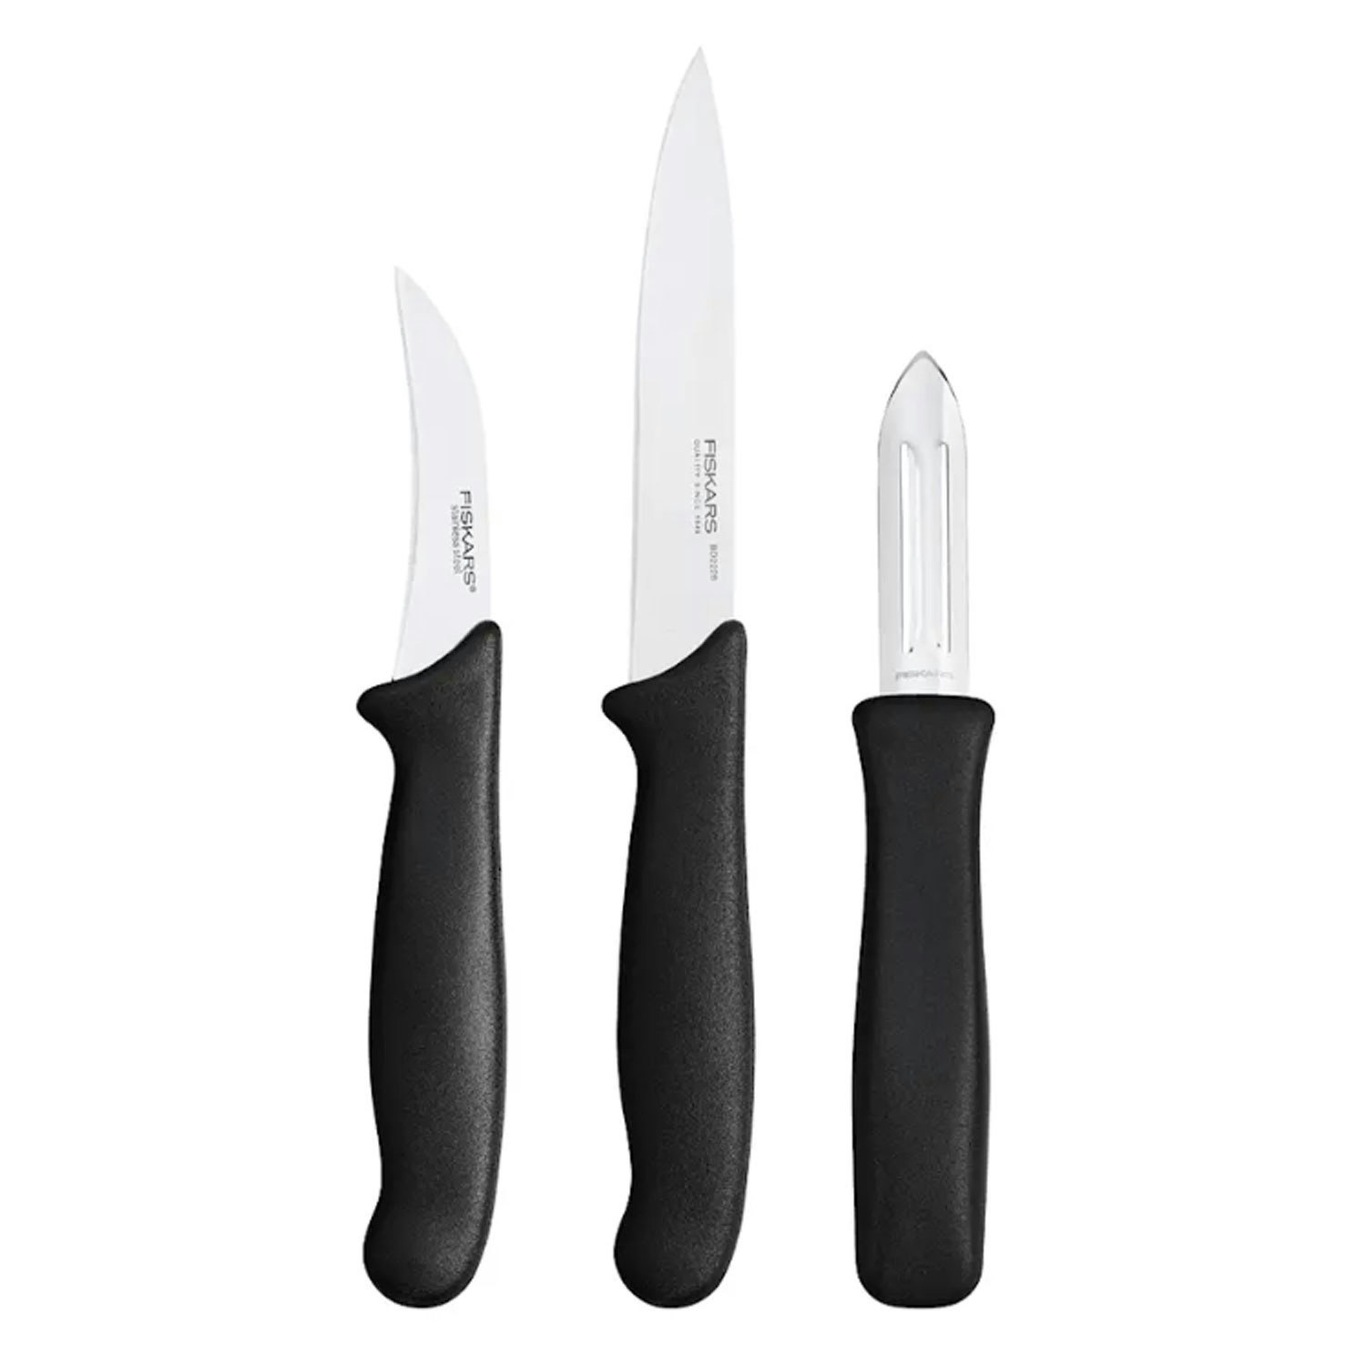 https://royaldesign.com/image/2/fiskars-essential-set-paring-knife-3-pieces-0?w=800&quality=80